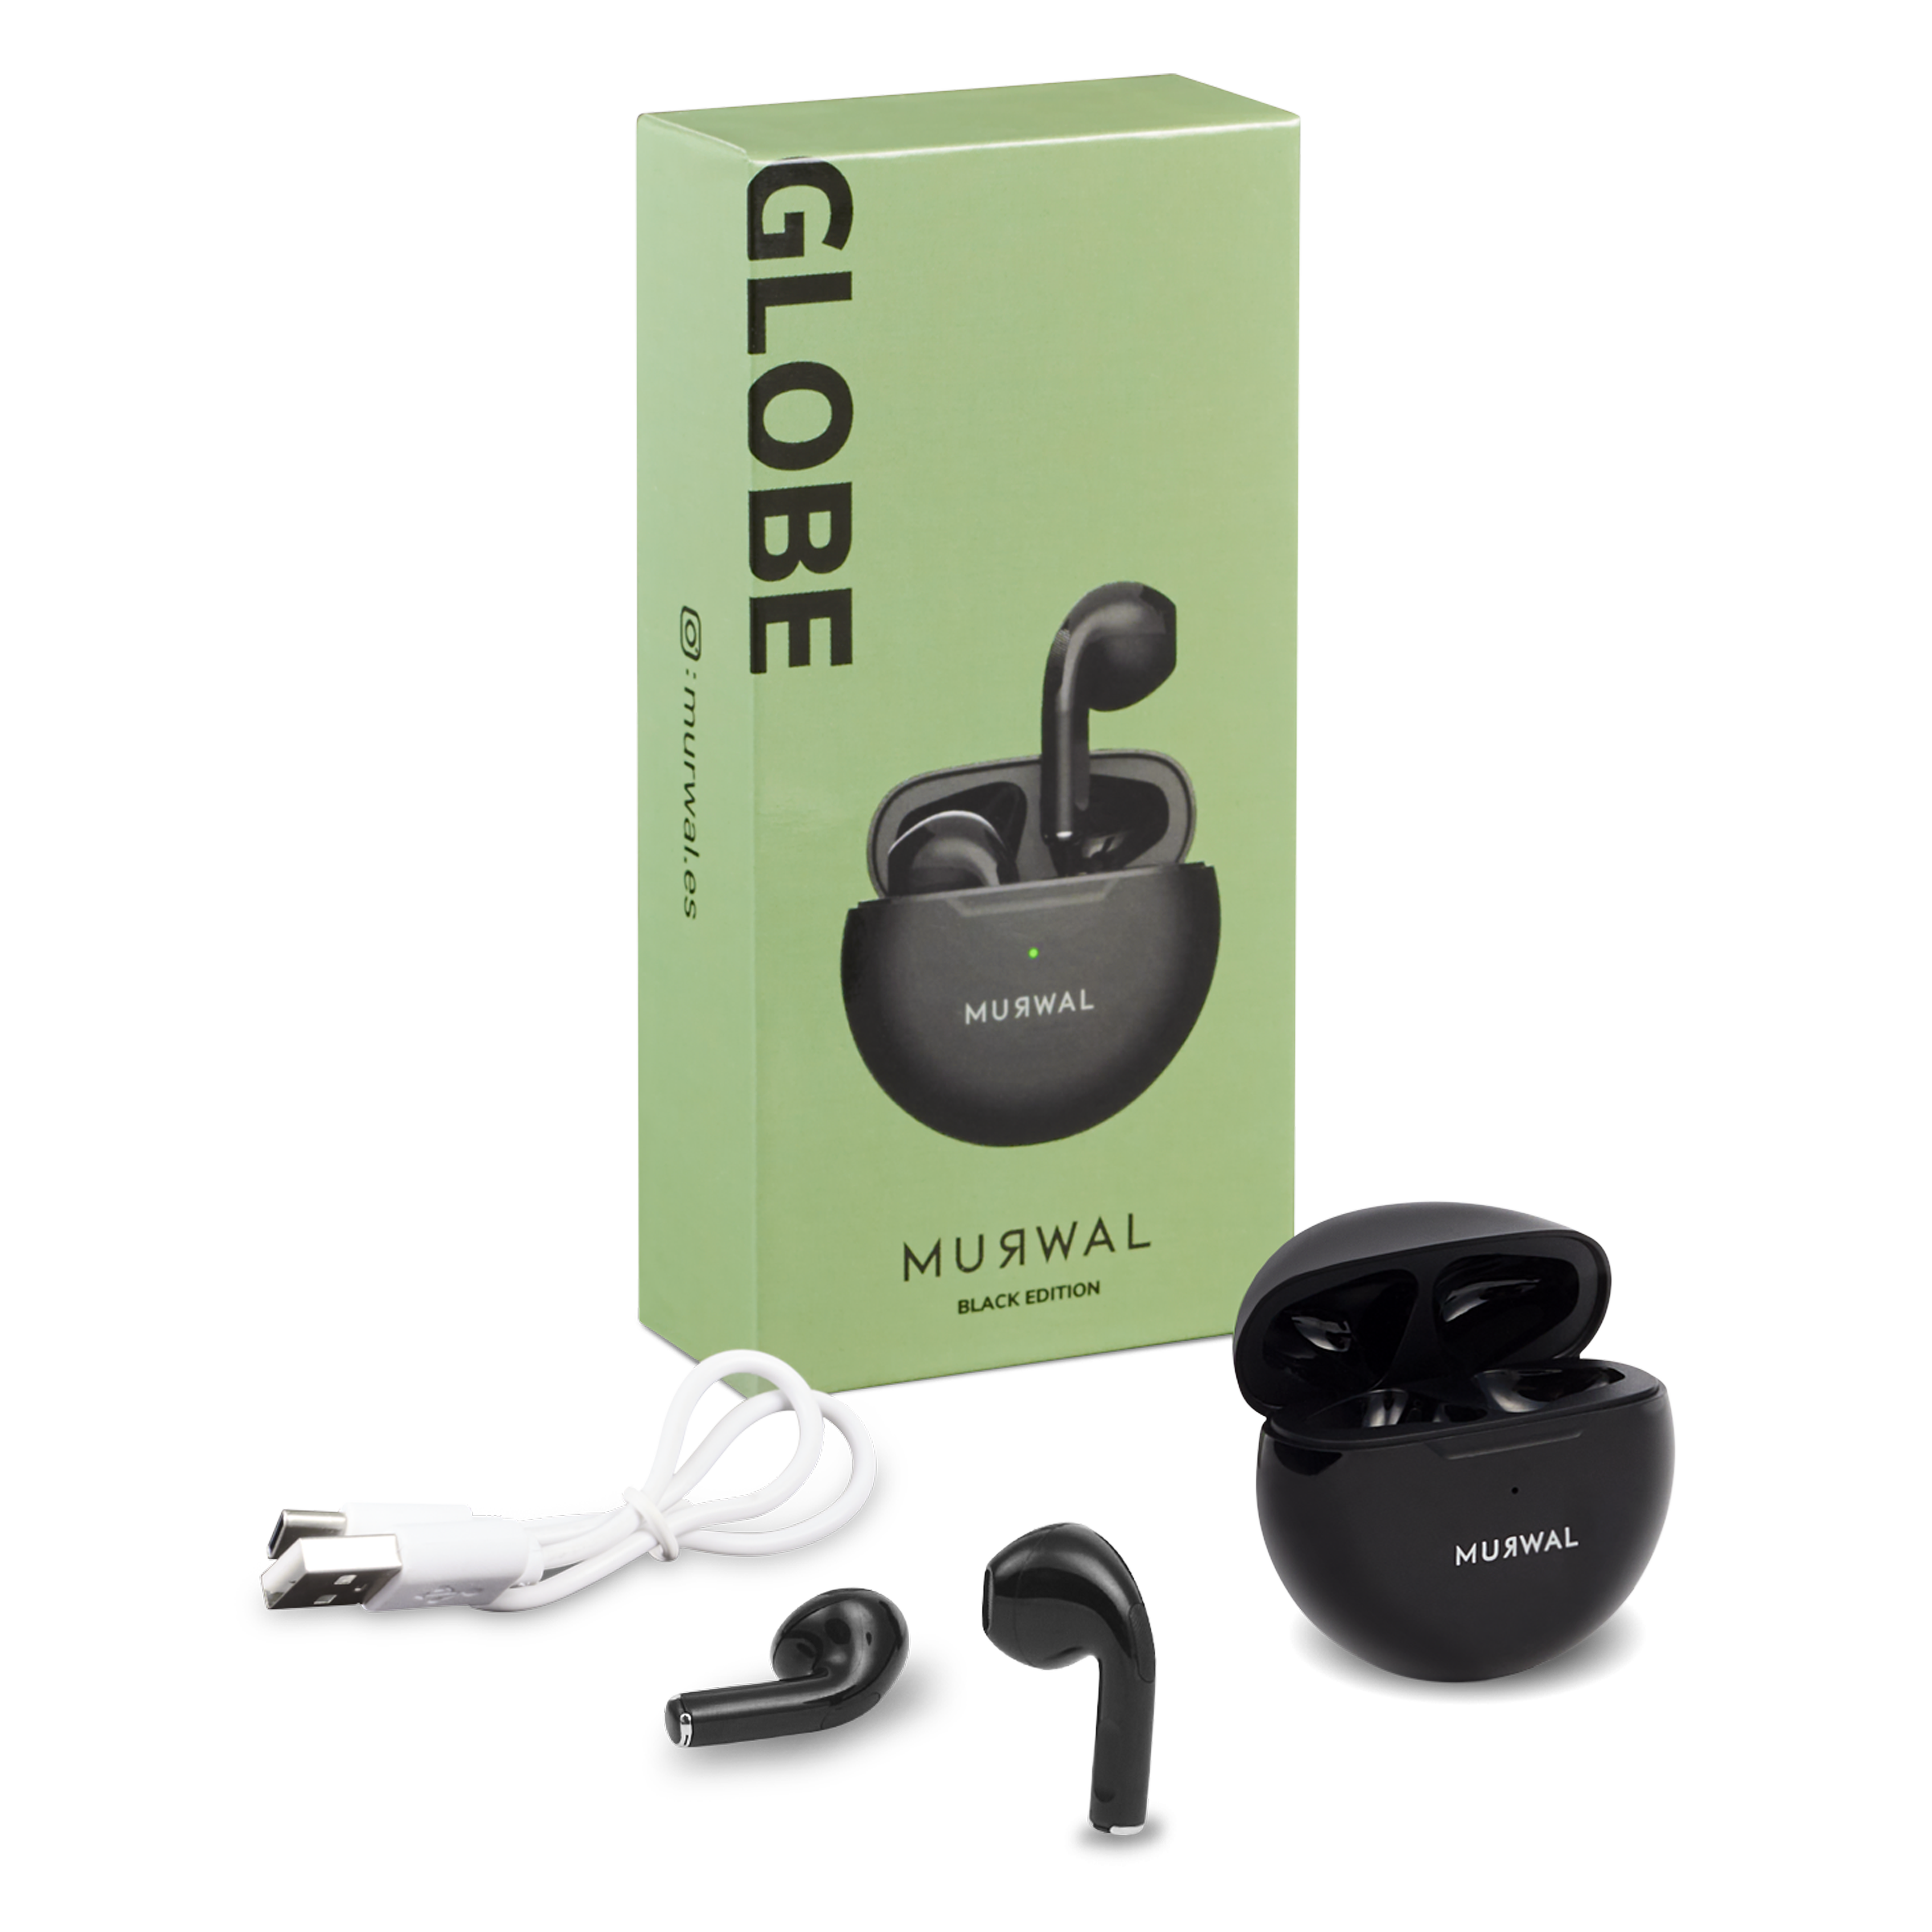 AURICULARES Bluetooth inalámbricos MURWAL GLOBE BLACK EDITION con microfono  20 Horas de reproducción, IPX5 Impermeable, reducción de Ruido para  Trabajar o Viajar ideales para el día a día Ajuste perfecto en oreja